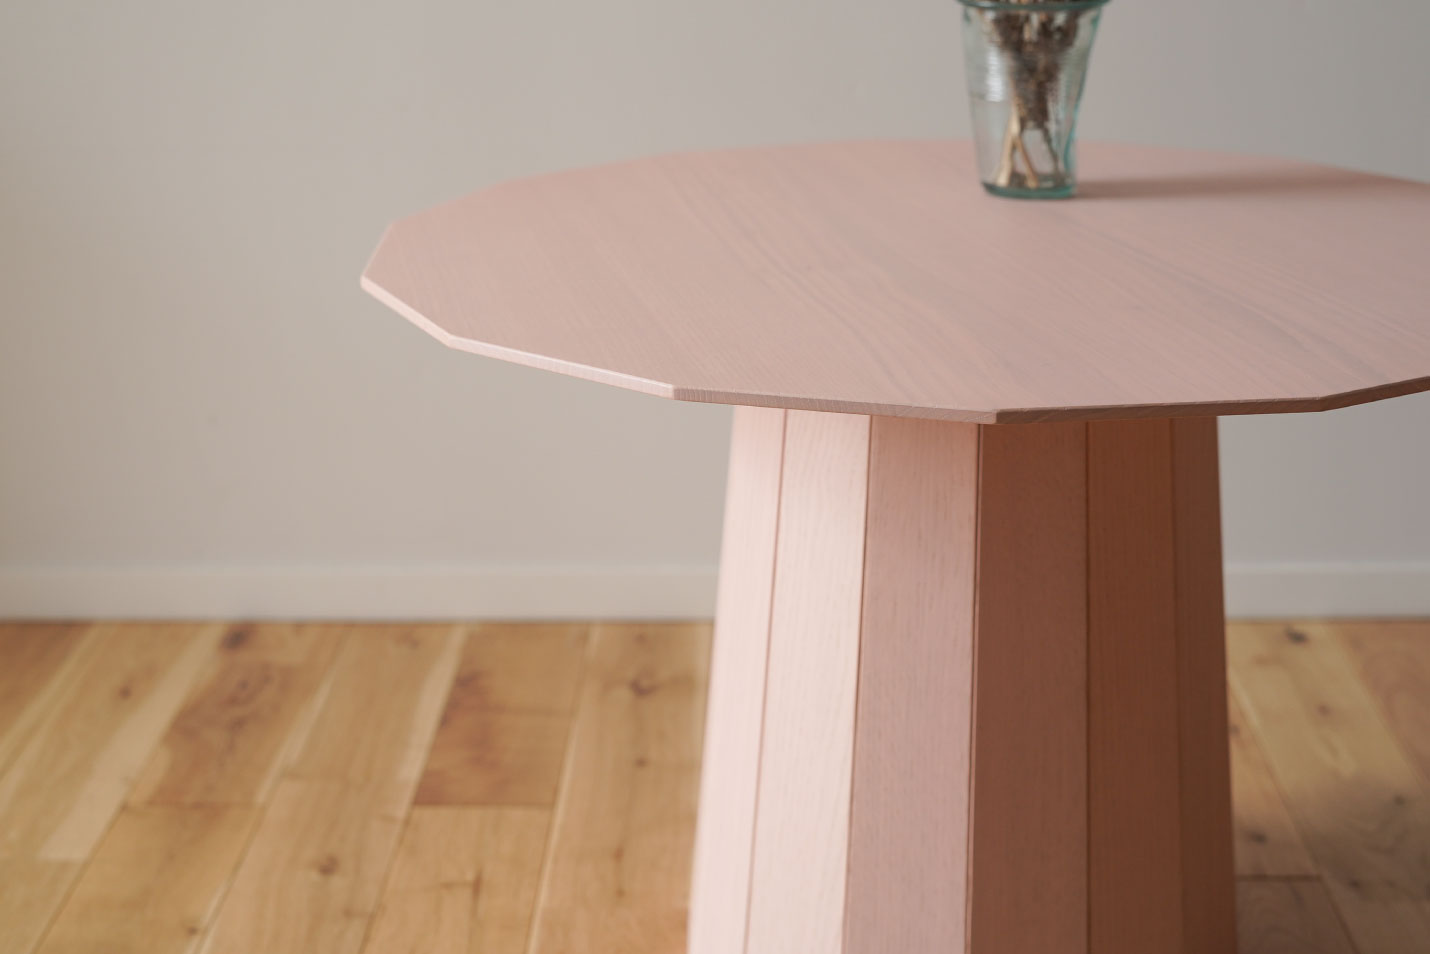 カリモクニュースタンダードのカラーウッドテーブルは高い技術によって製造されています